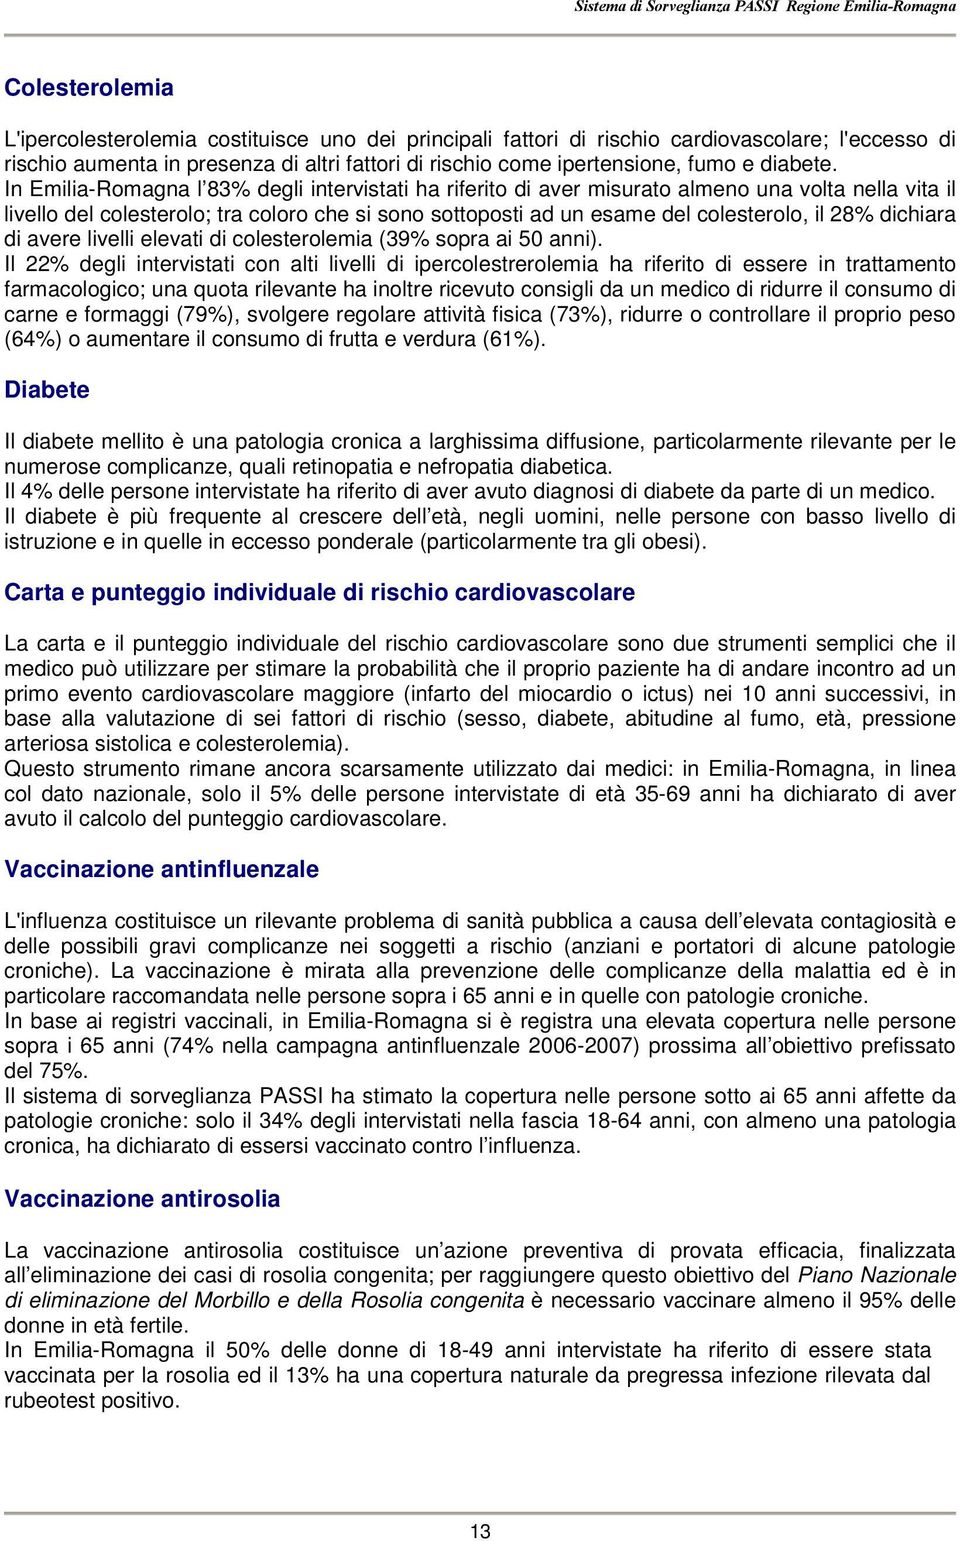 In Emilia-Romagna l 83 degli intervistati ha riferito di aver misurato almeno una volta nella vita il livello del colesterolo; tra coloro che si sono sottoposti ad un esame del colesterolo, il 28